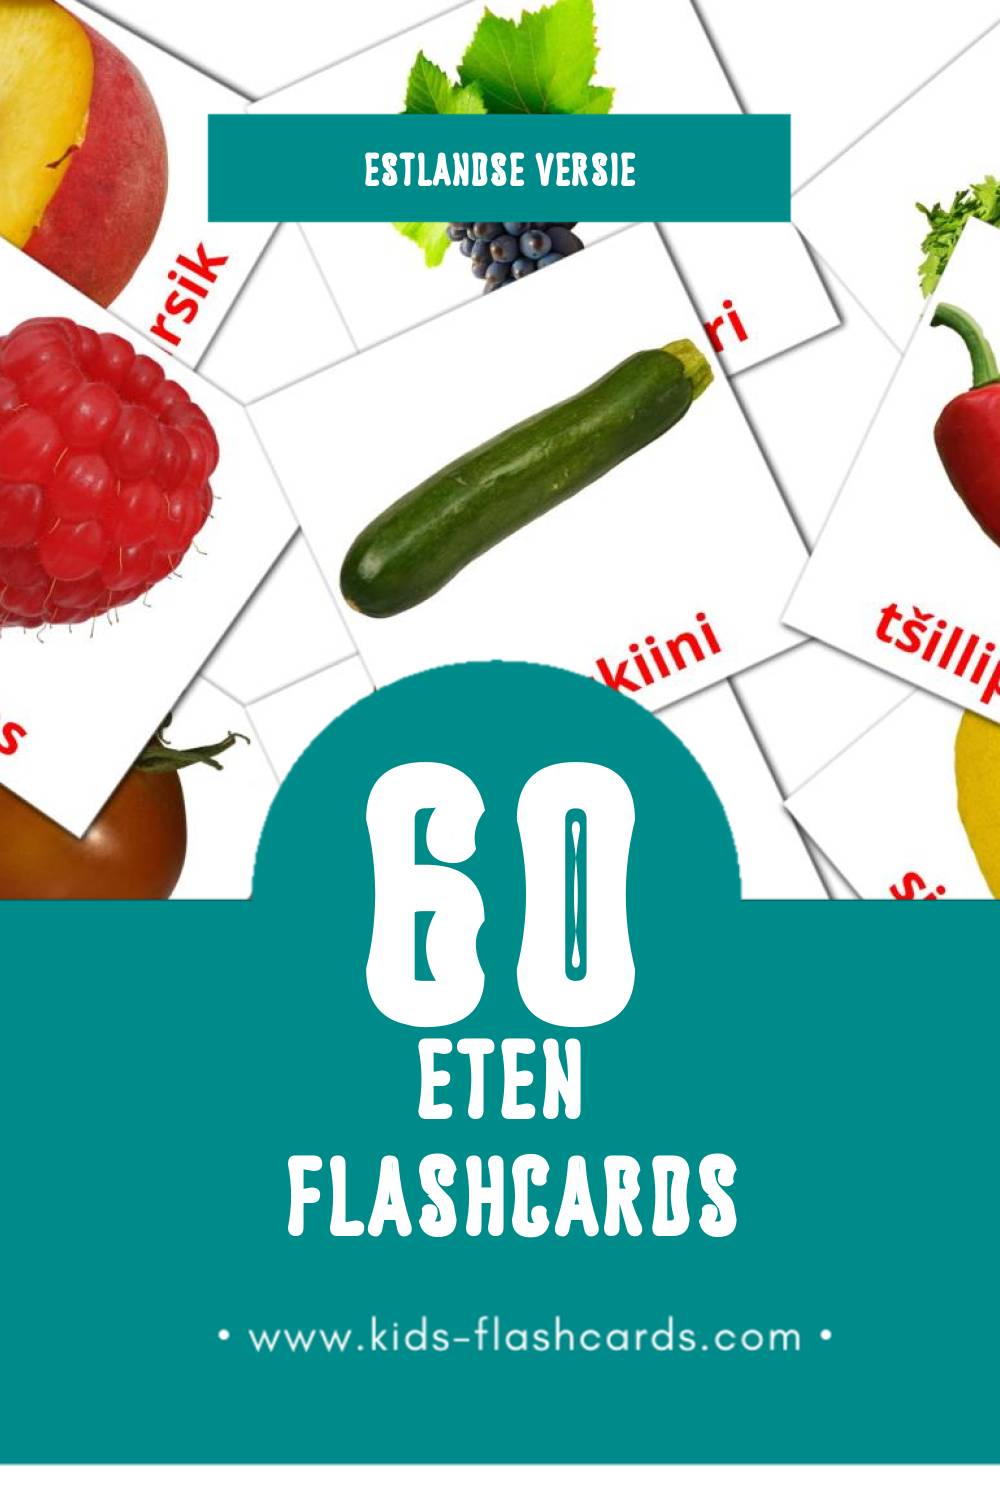 Visuele Toit Flashcards voor Kleuters (60 kaarten in het Estlands)